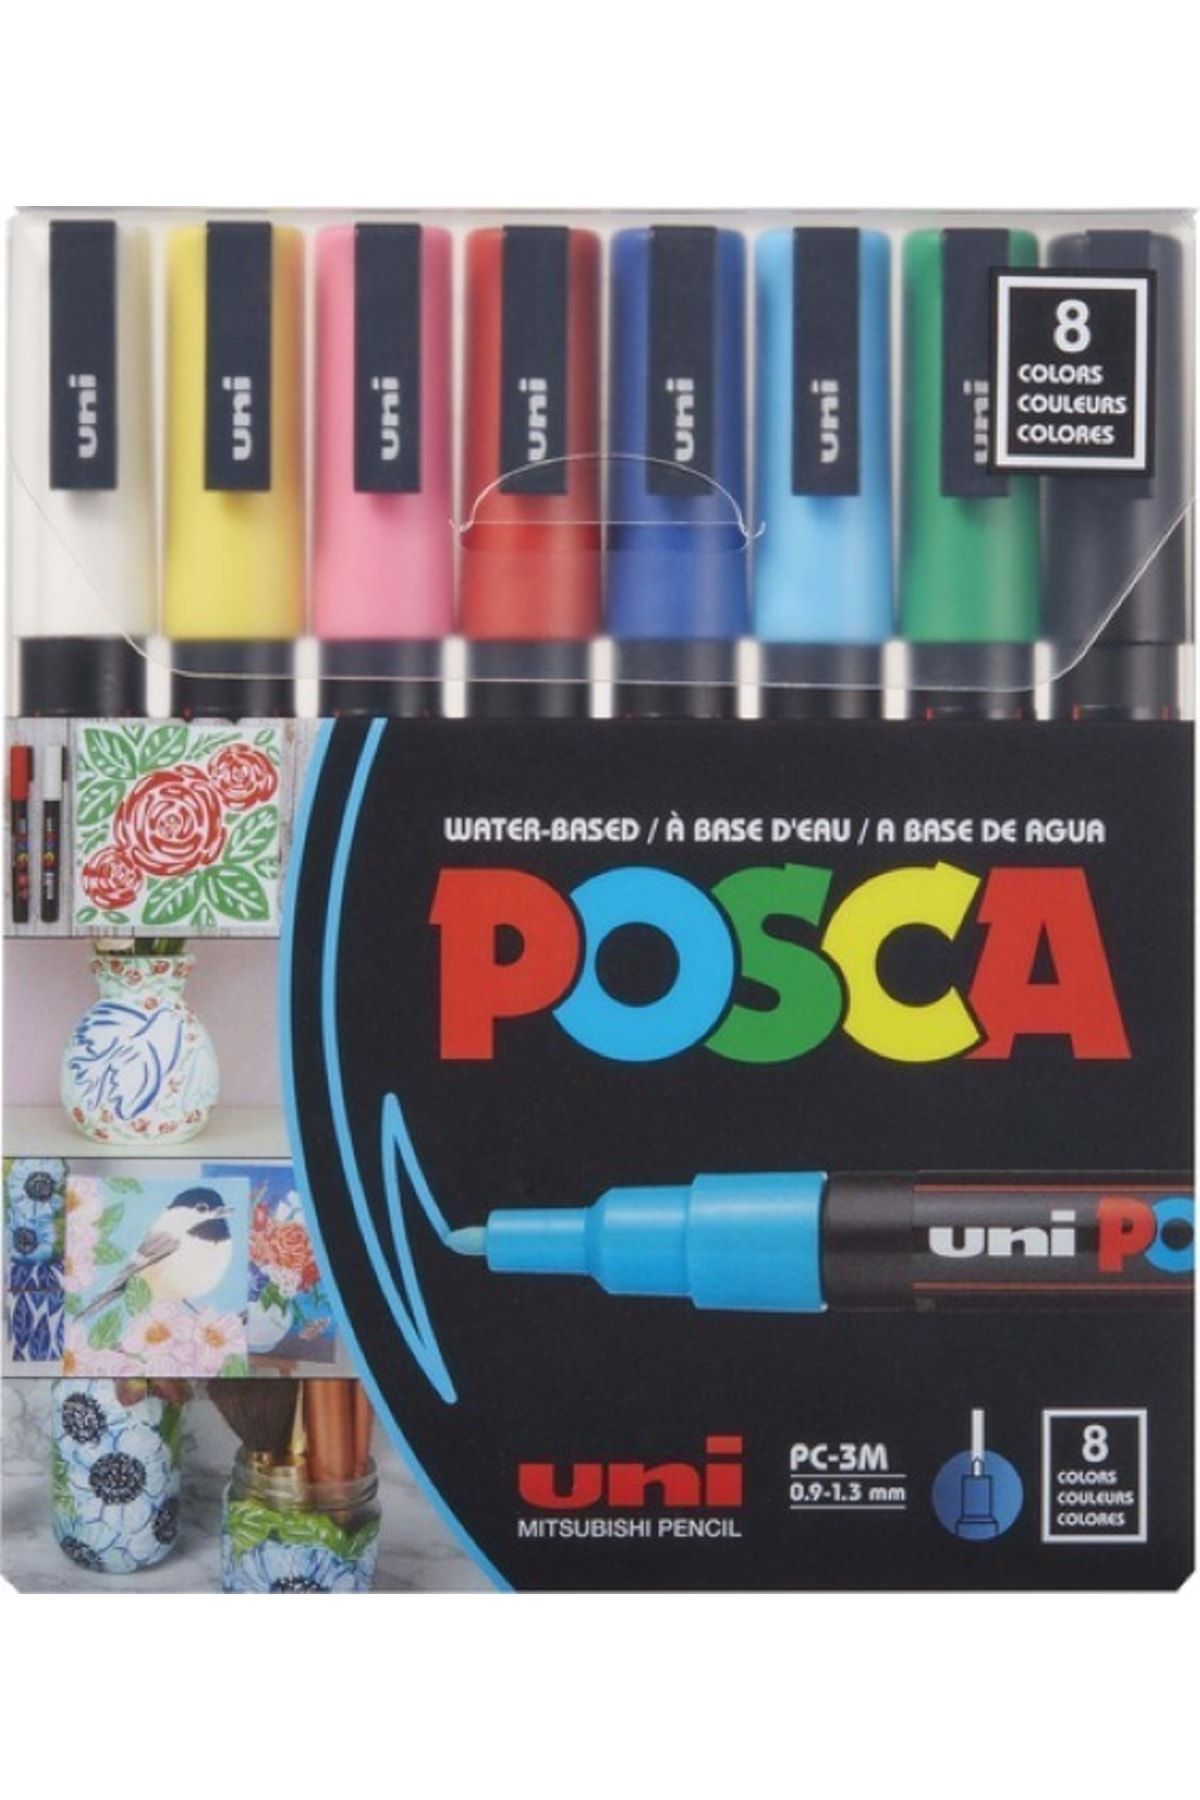 Uni Posca Paint Marker Sets 8-color Pc-3m Medium Set